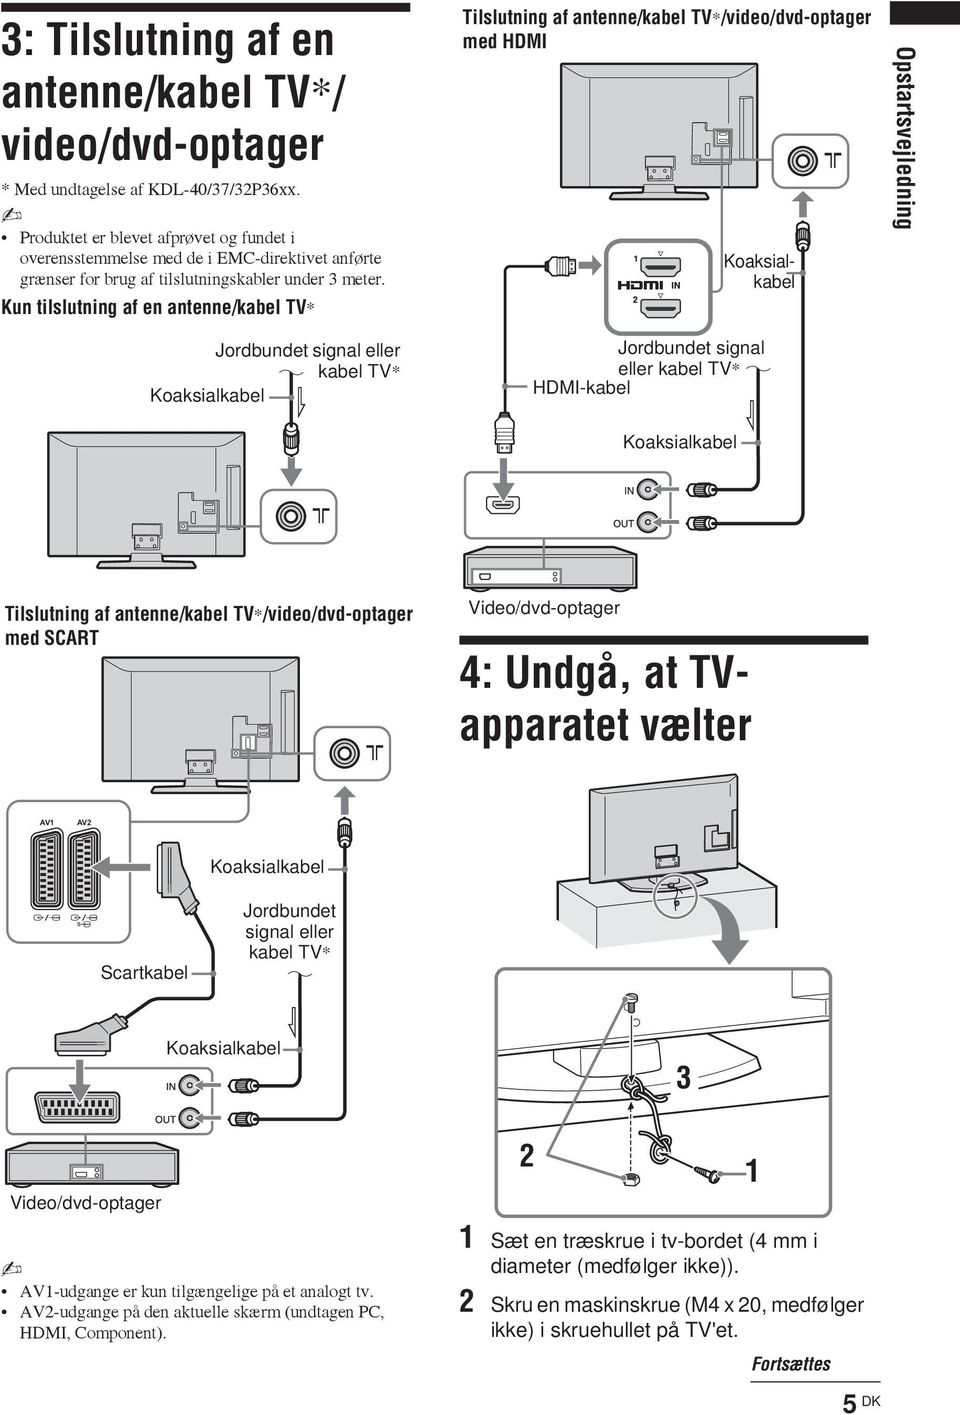 Kun tilslutning af en antenne/kabel TV* Tilslutning af antenne/kabel TV*/video/dvd-optager med HDMI Koaksialkabel Opstartsvejledning Jordbundet signal eller kabel TV* Koaksialkabel Jordbundet signal